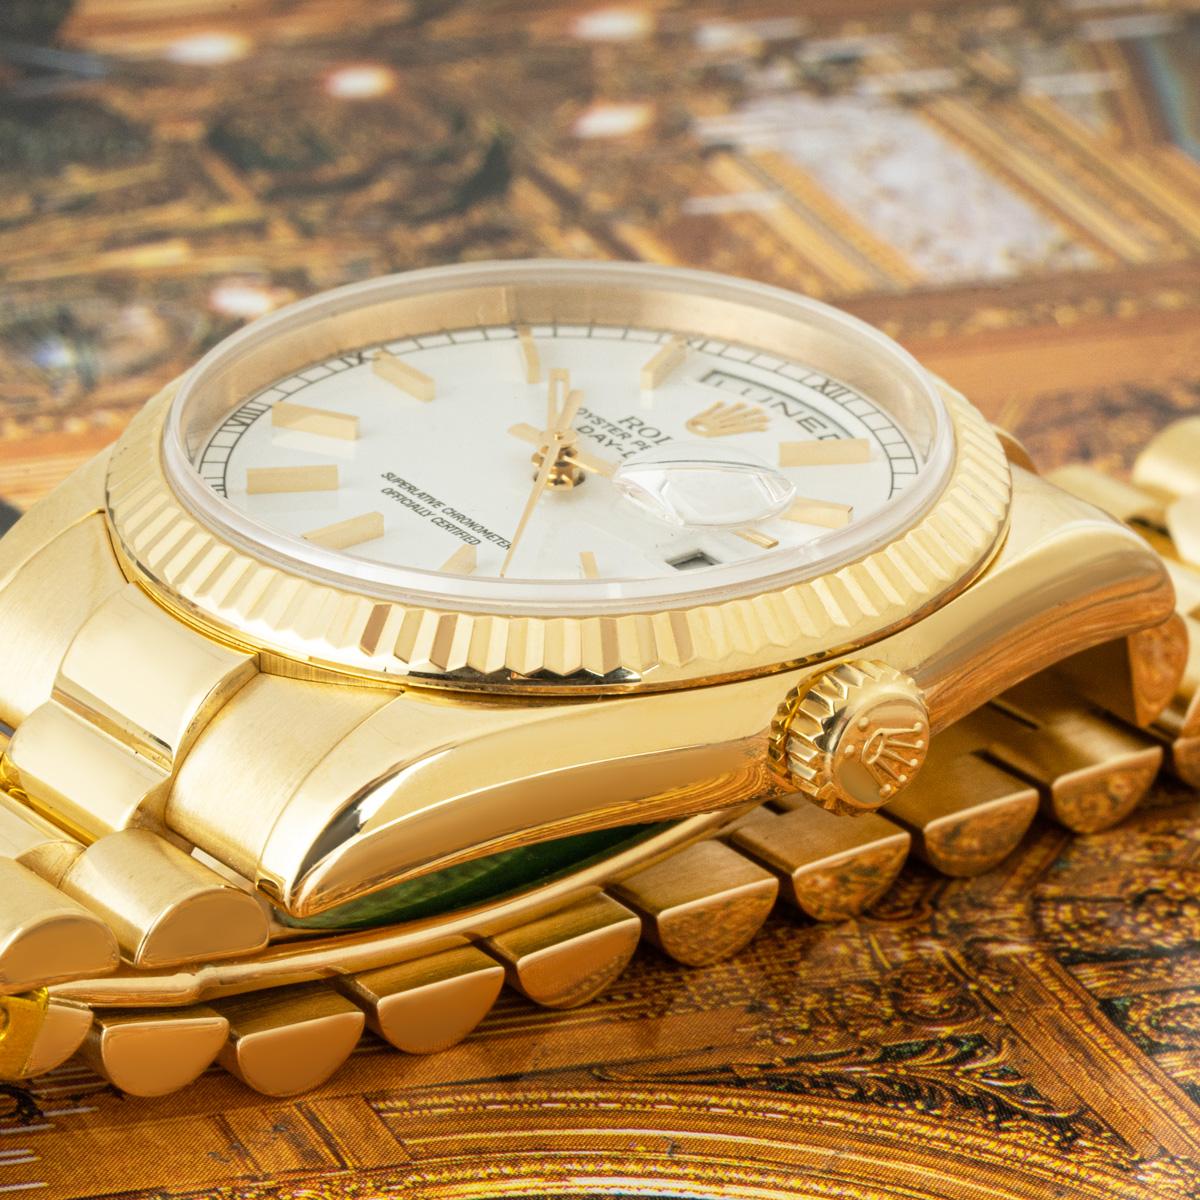 Eine Day-Date aus Gelbgold mit 36 mm Durchmesser von Rolex. Sie verfügt über ein weißes Zifferblatt mit applizierten Stundenmarkierungen sowie römischen Ziffern am äußeren Umfang des Zifferblatts und eine kannelierte Lünette aus Gelbgold. Das